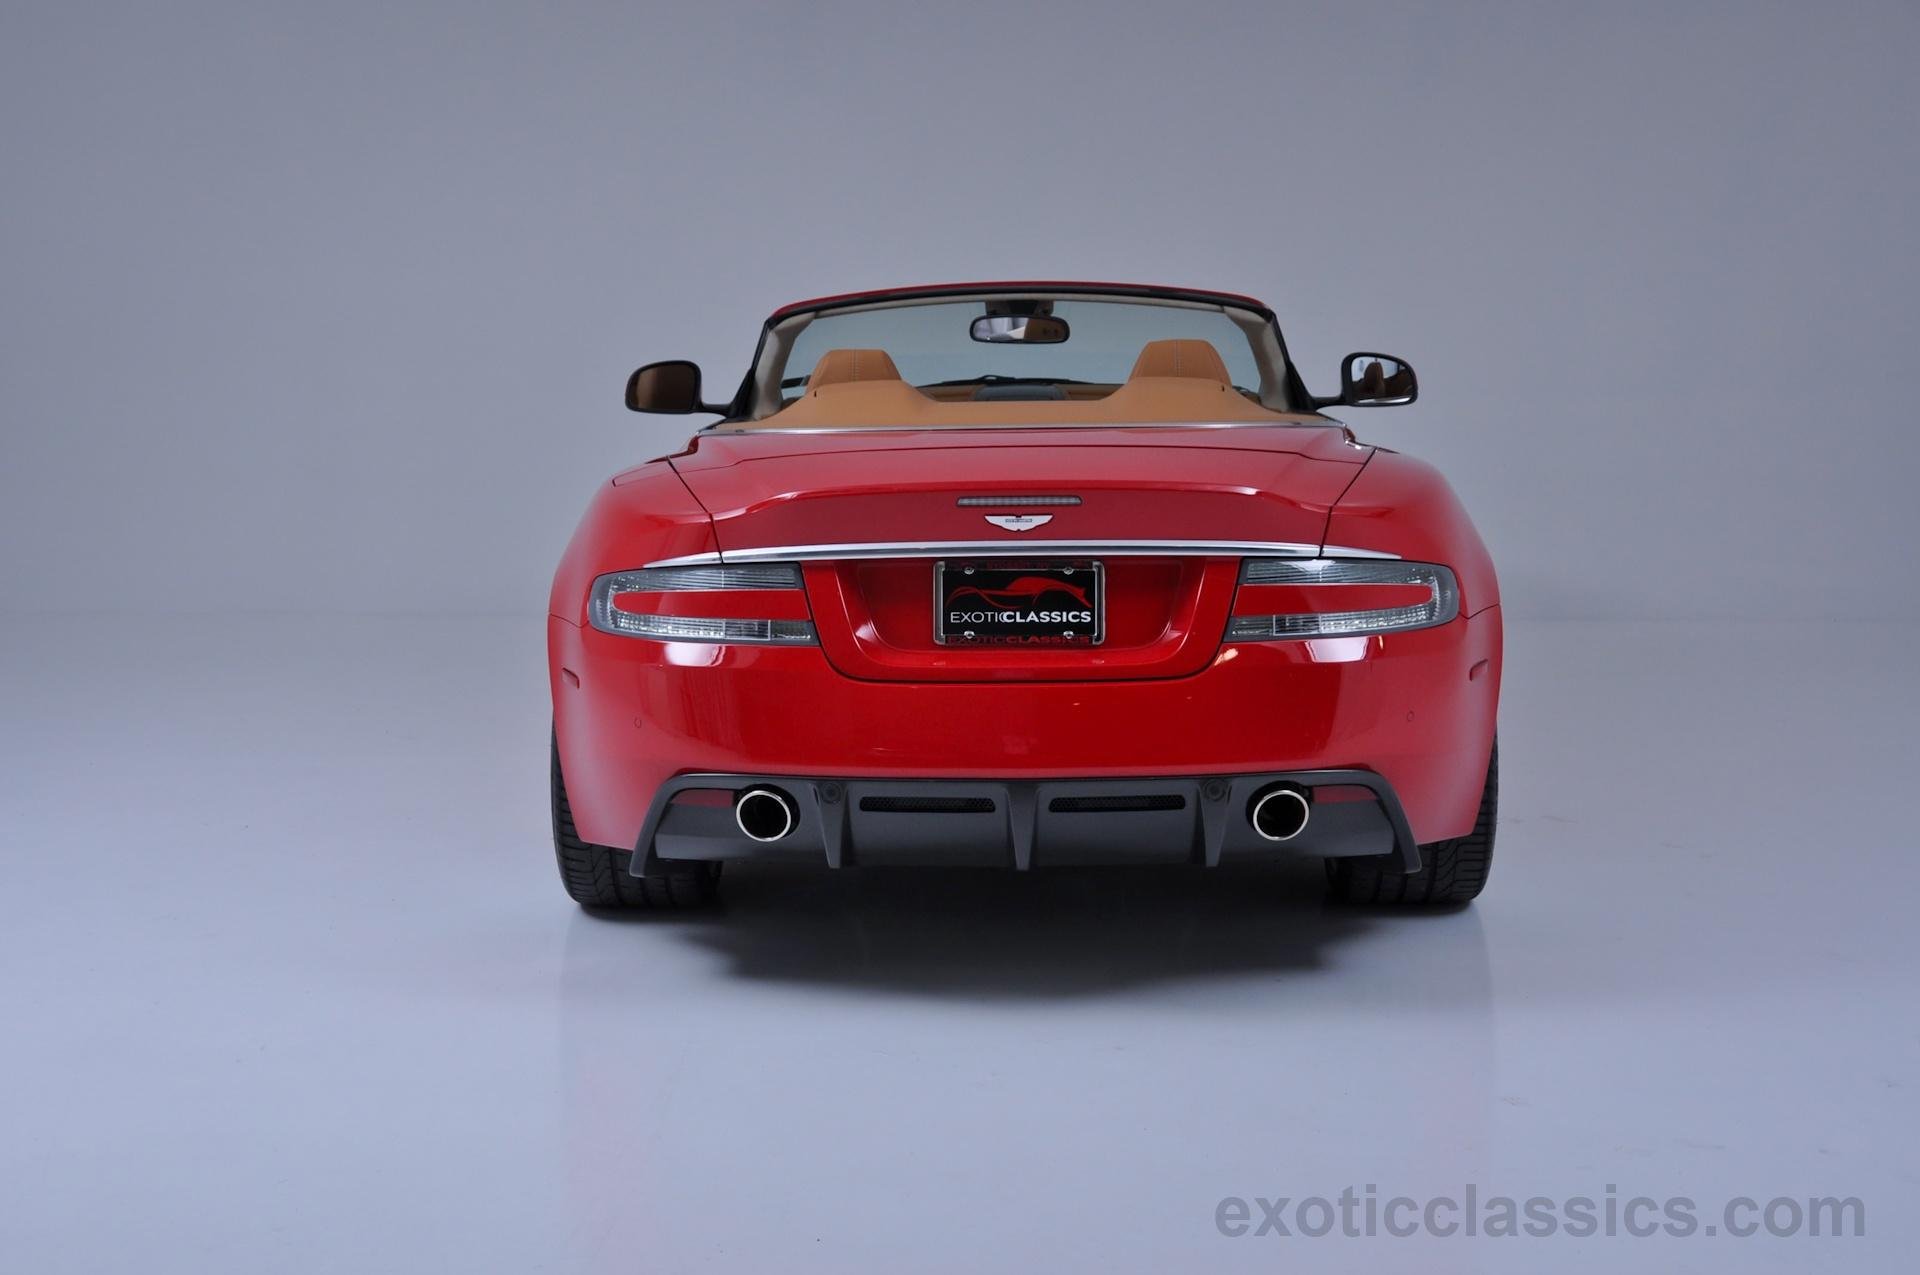 2010, Aston, Martin, Db9, Red, Cars, Volante Wallpaper